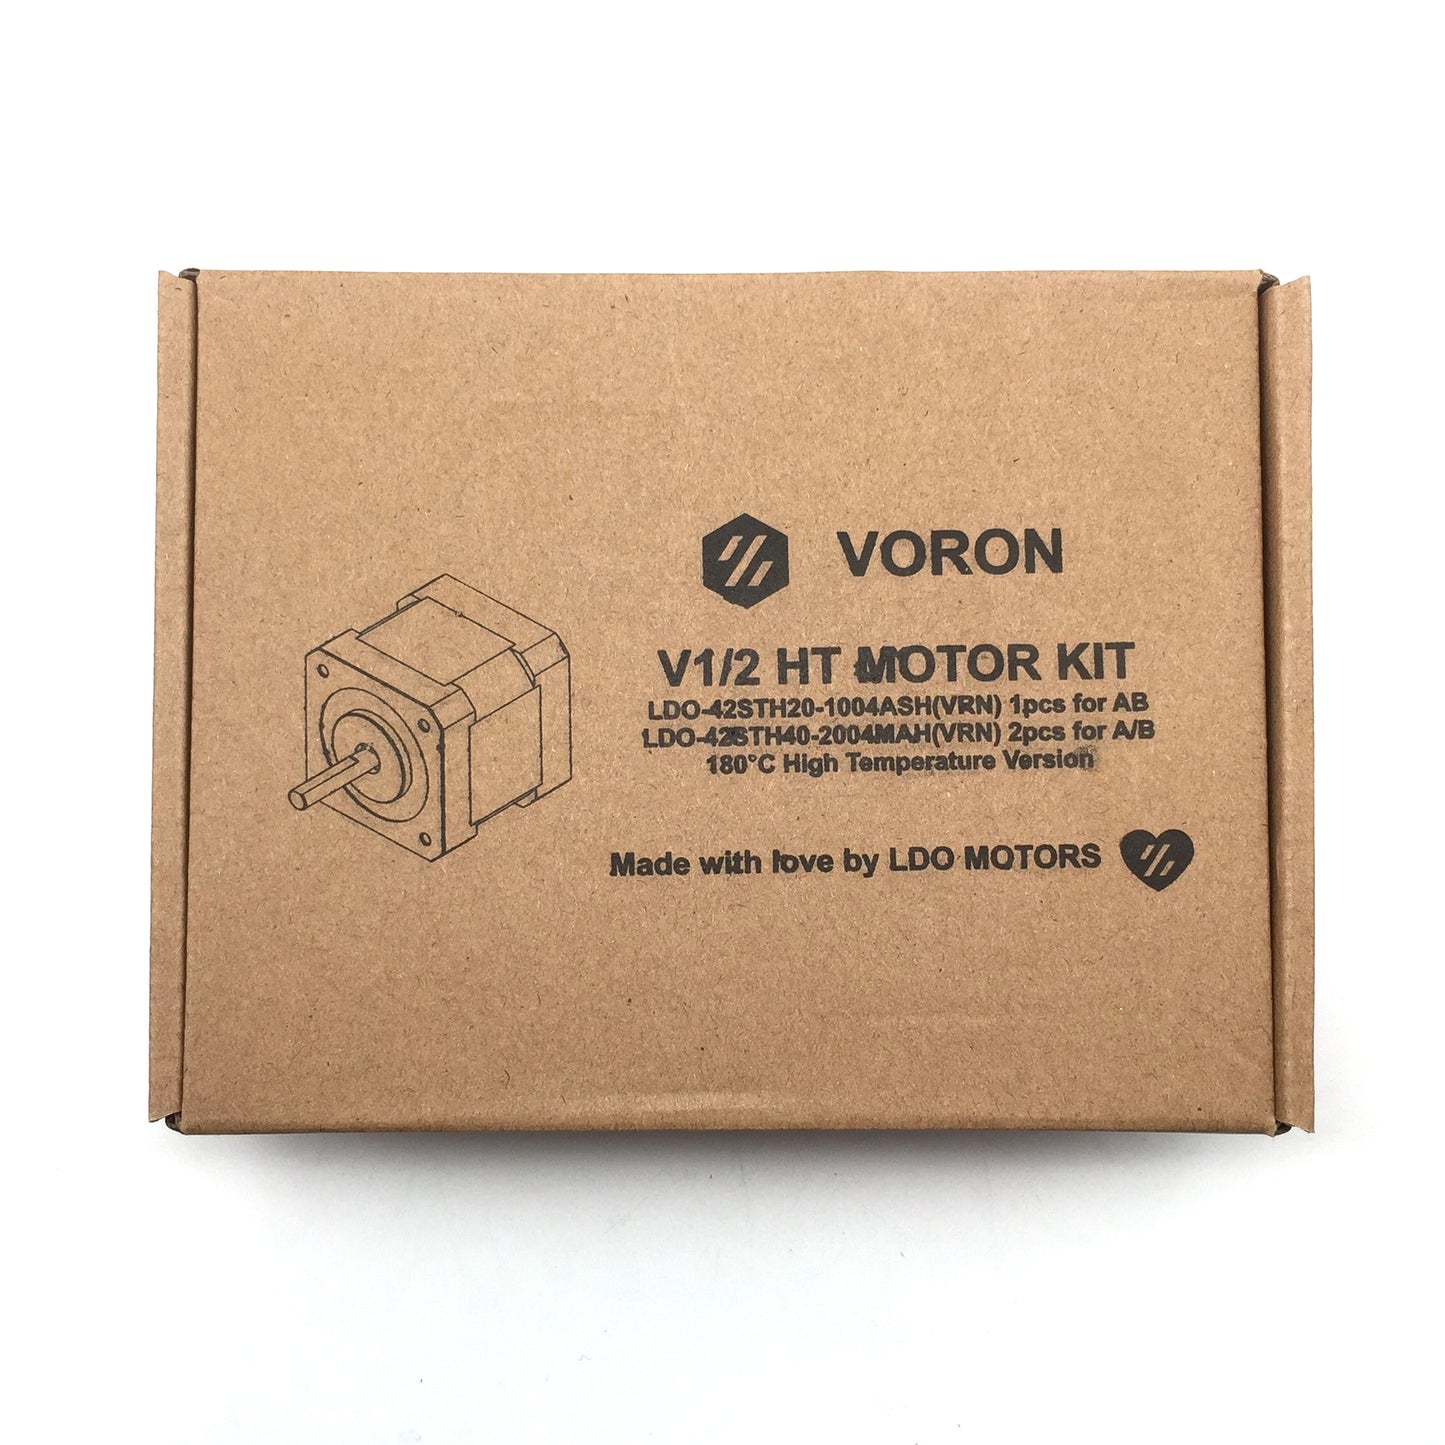 LDO Voron V1/2 HT Motor Kit